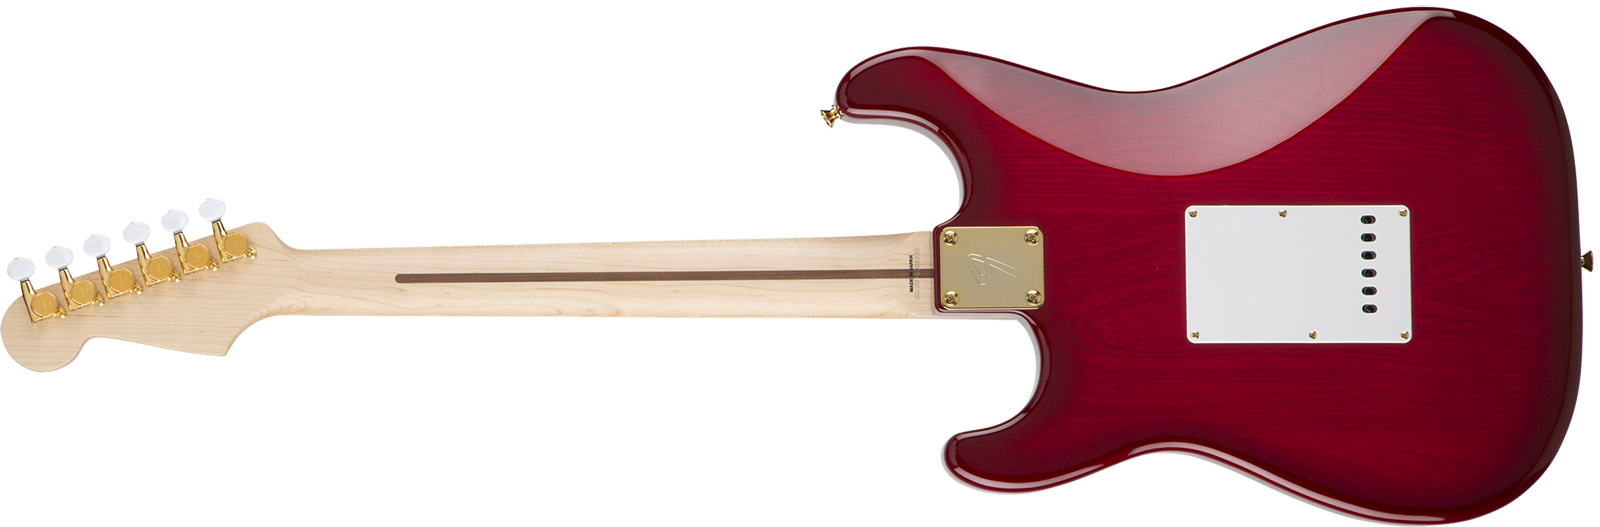 Fender Richie Kotzen Strat Japan Ltd 3s Mn - Transparent Red Burst - Elektrische gitaar in Str-vorm - Variation 4